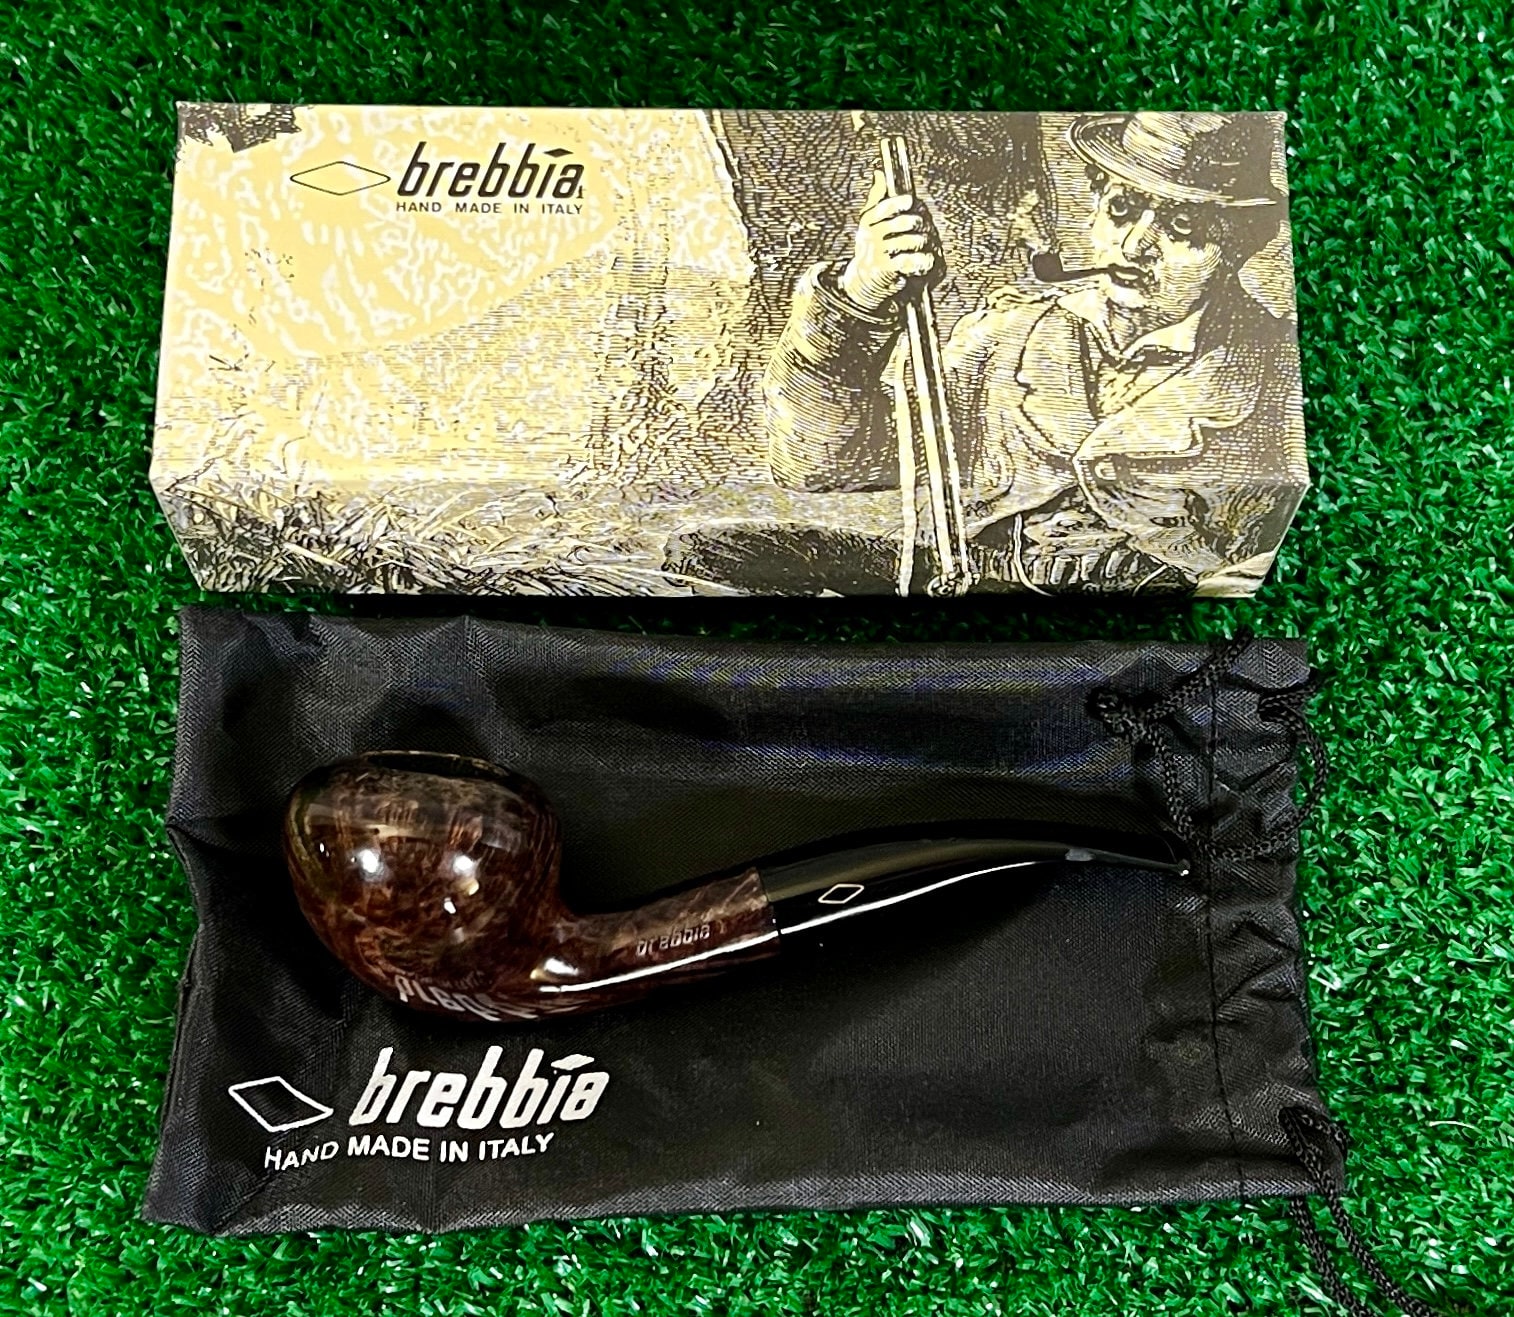 Brebbia tobacco pouch (cognac) - La Pipe Rit